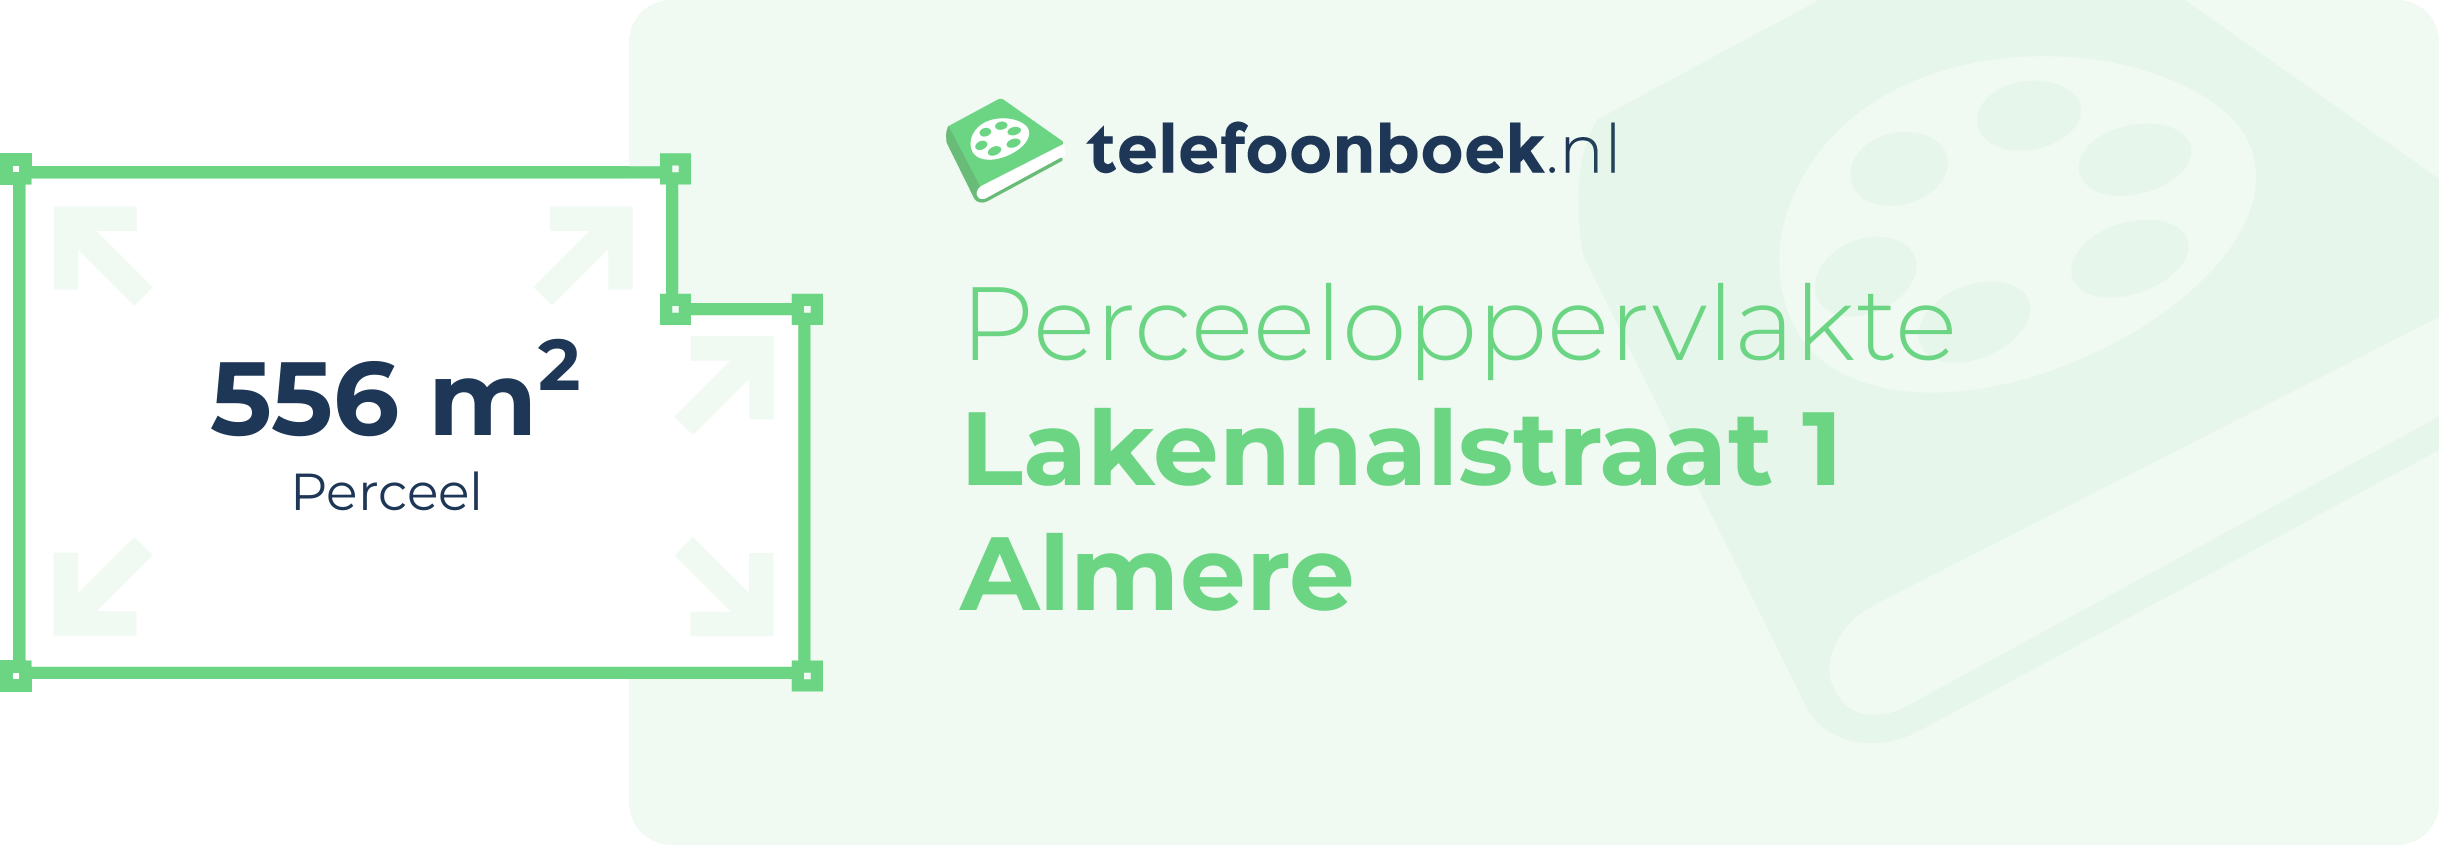 Perceeloppervlakte Lakenhalstraat 1 Almere